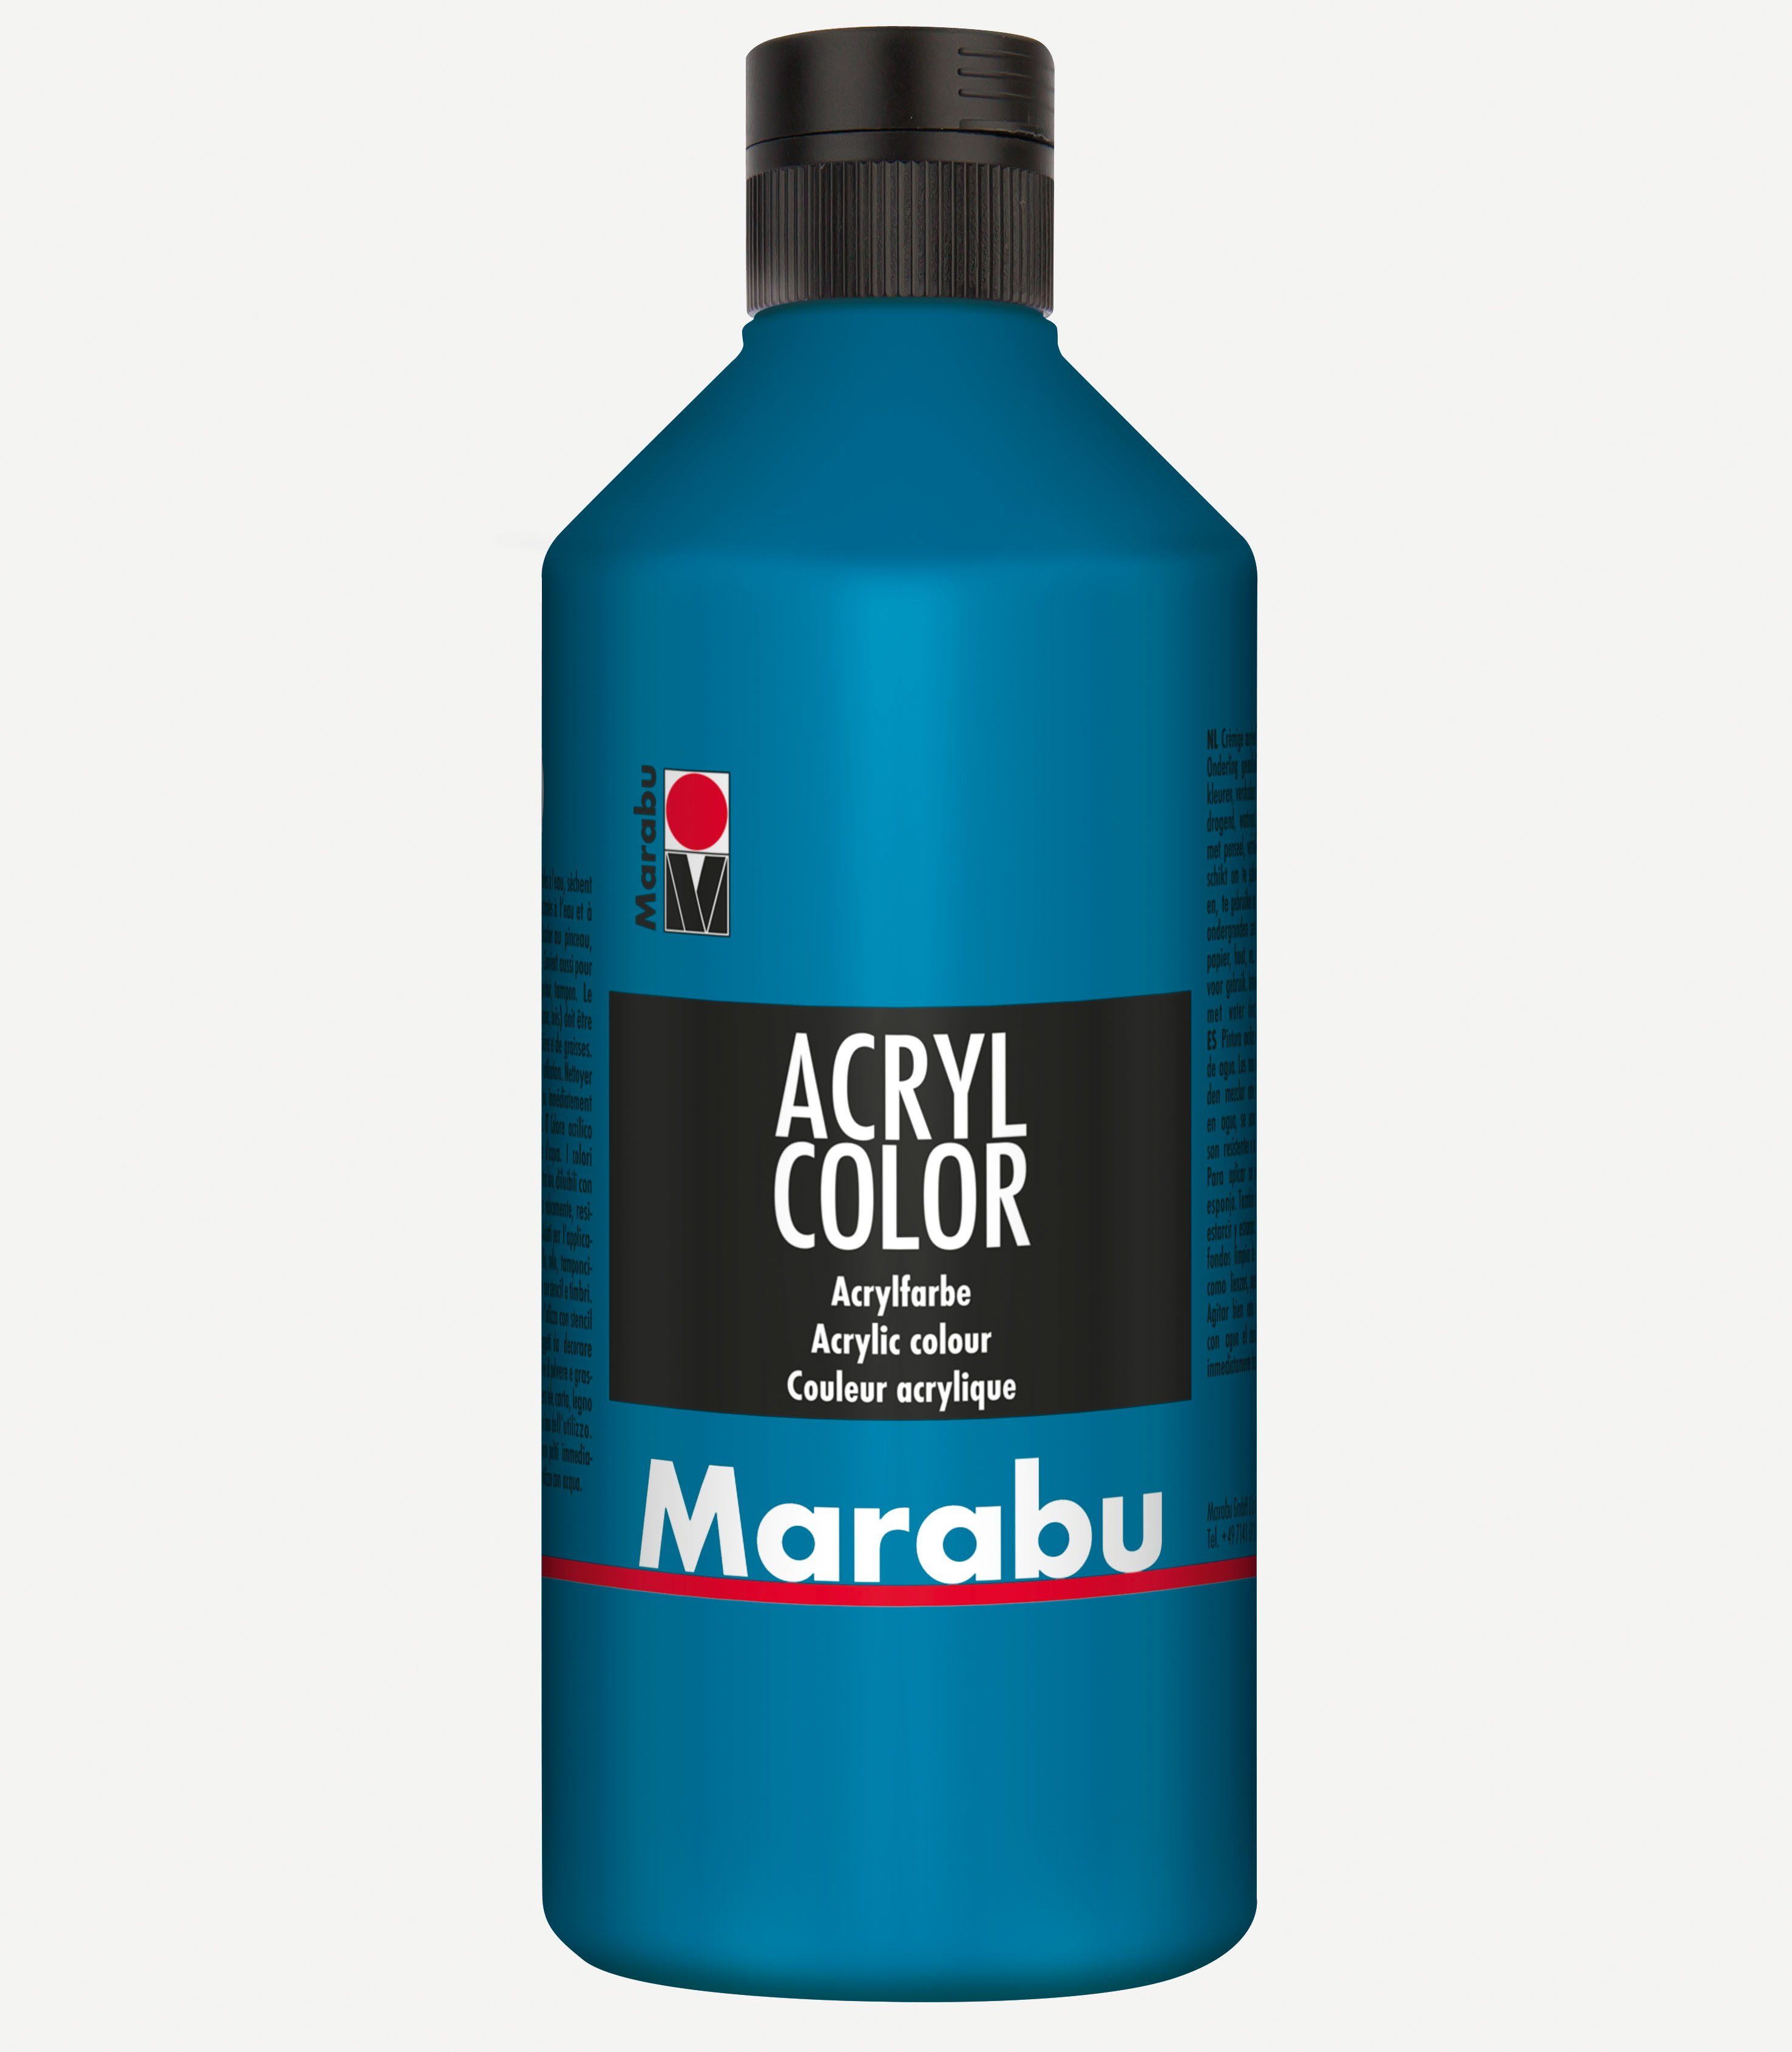 Marabu Acrylfarbe Marabu Acrylfarbe Acryl Color, 500 ml, cyan 056